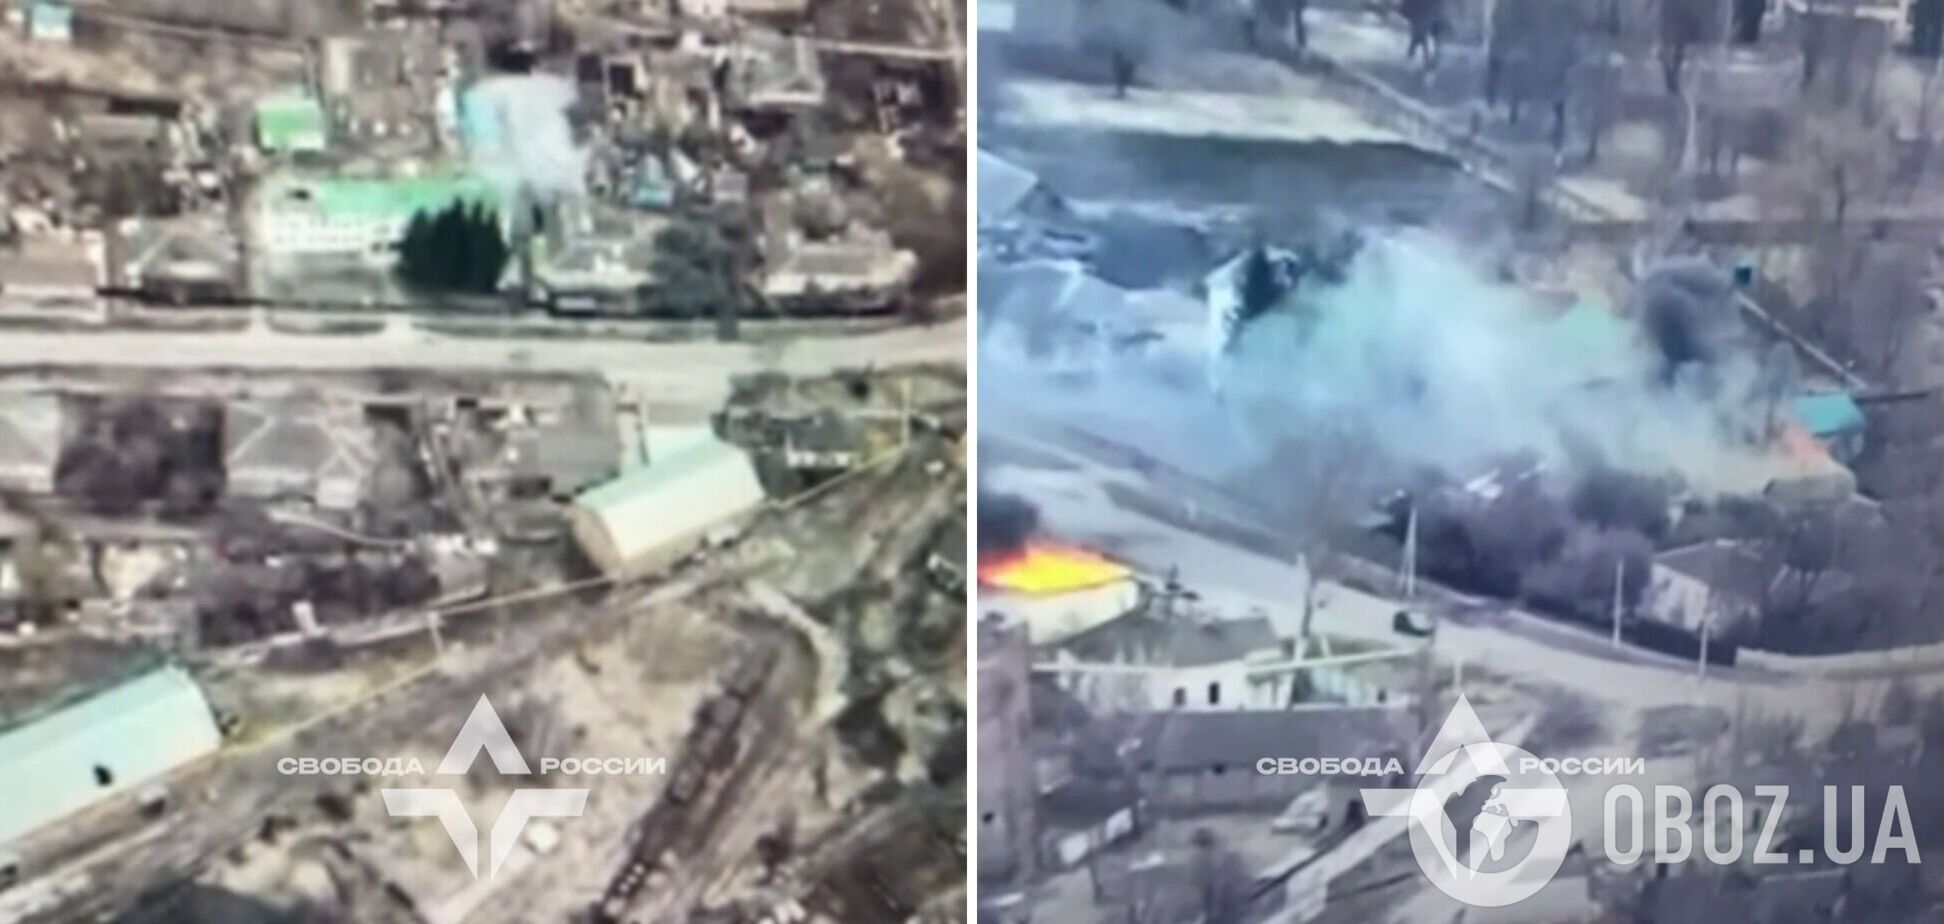 'Хорошо горит!' Легион 'Свобода России' заявил об уничтожении складов БК в Курской области. Видео